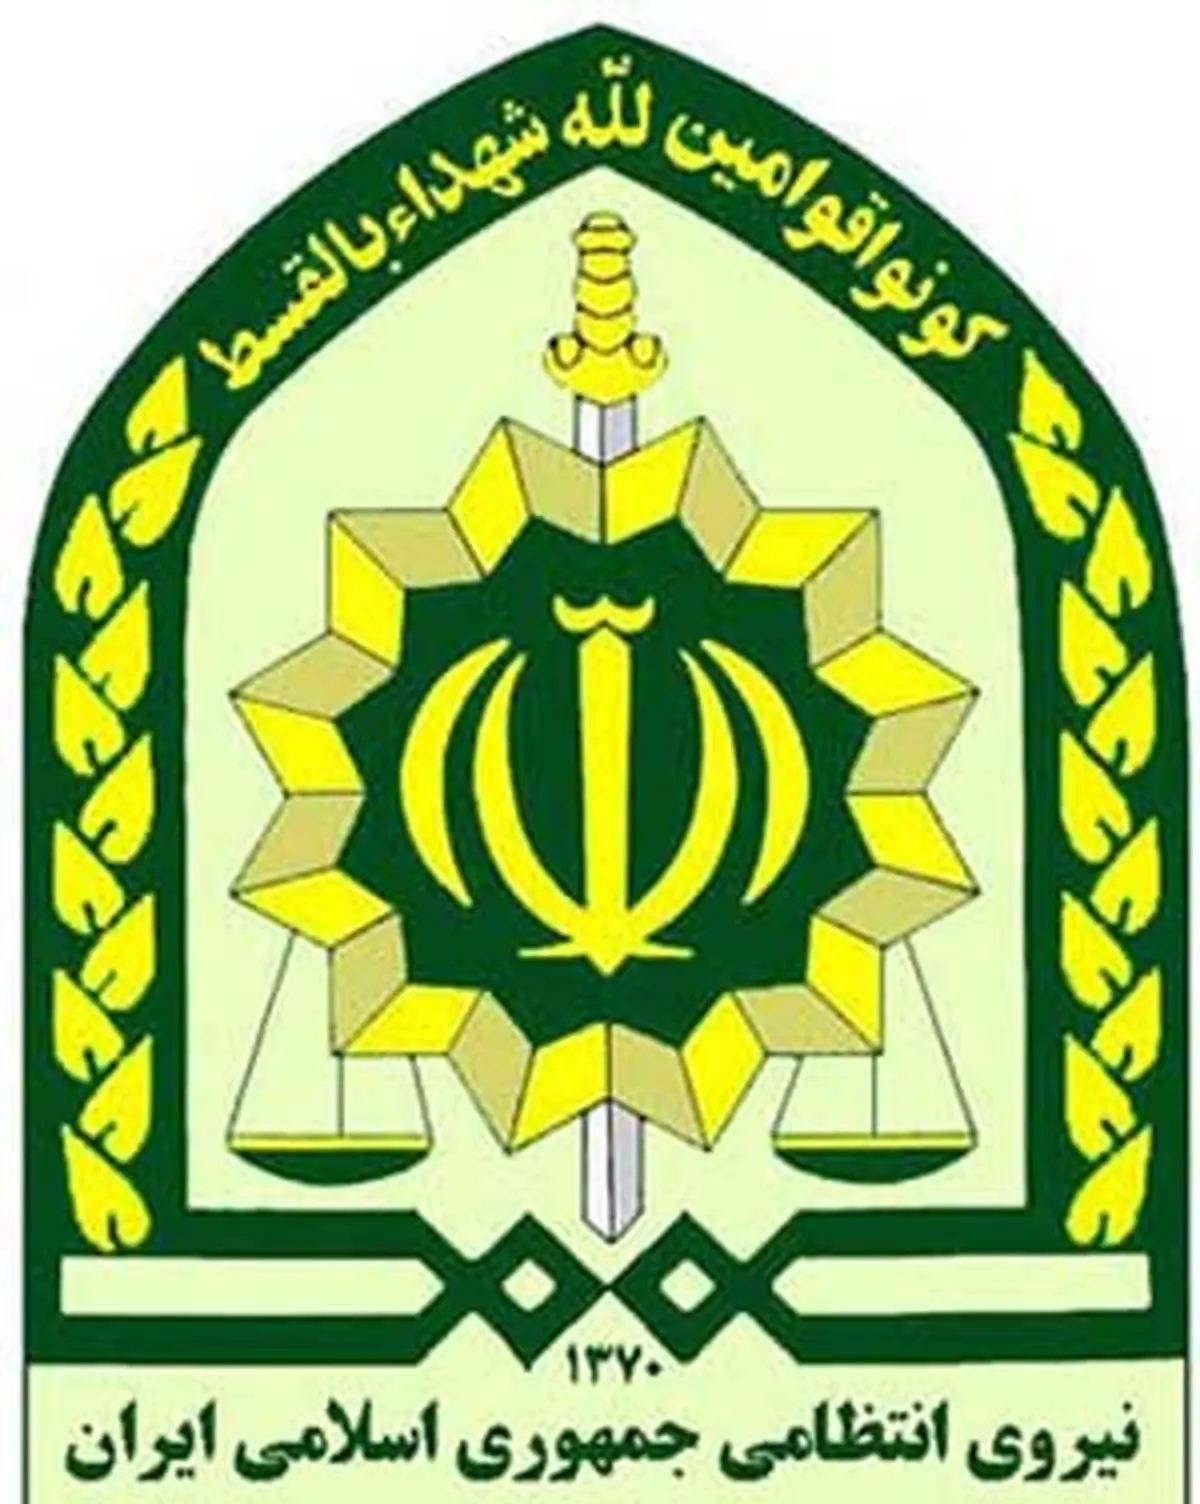 توضیحات پلیس پیرامون تیراندازی در تهران